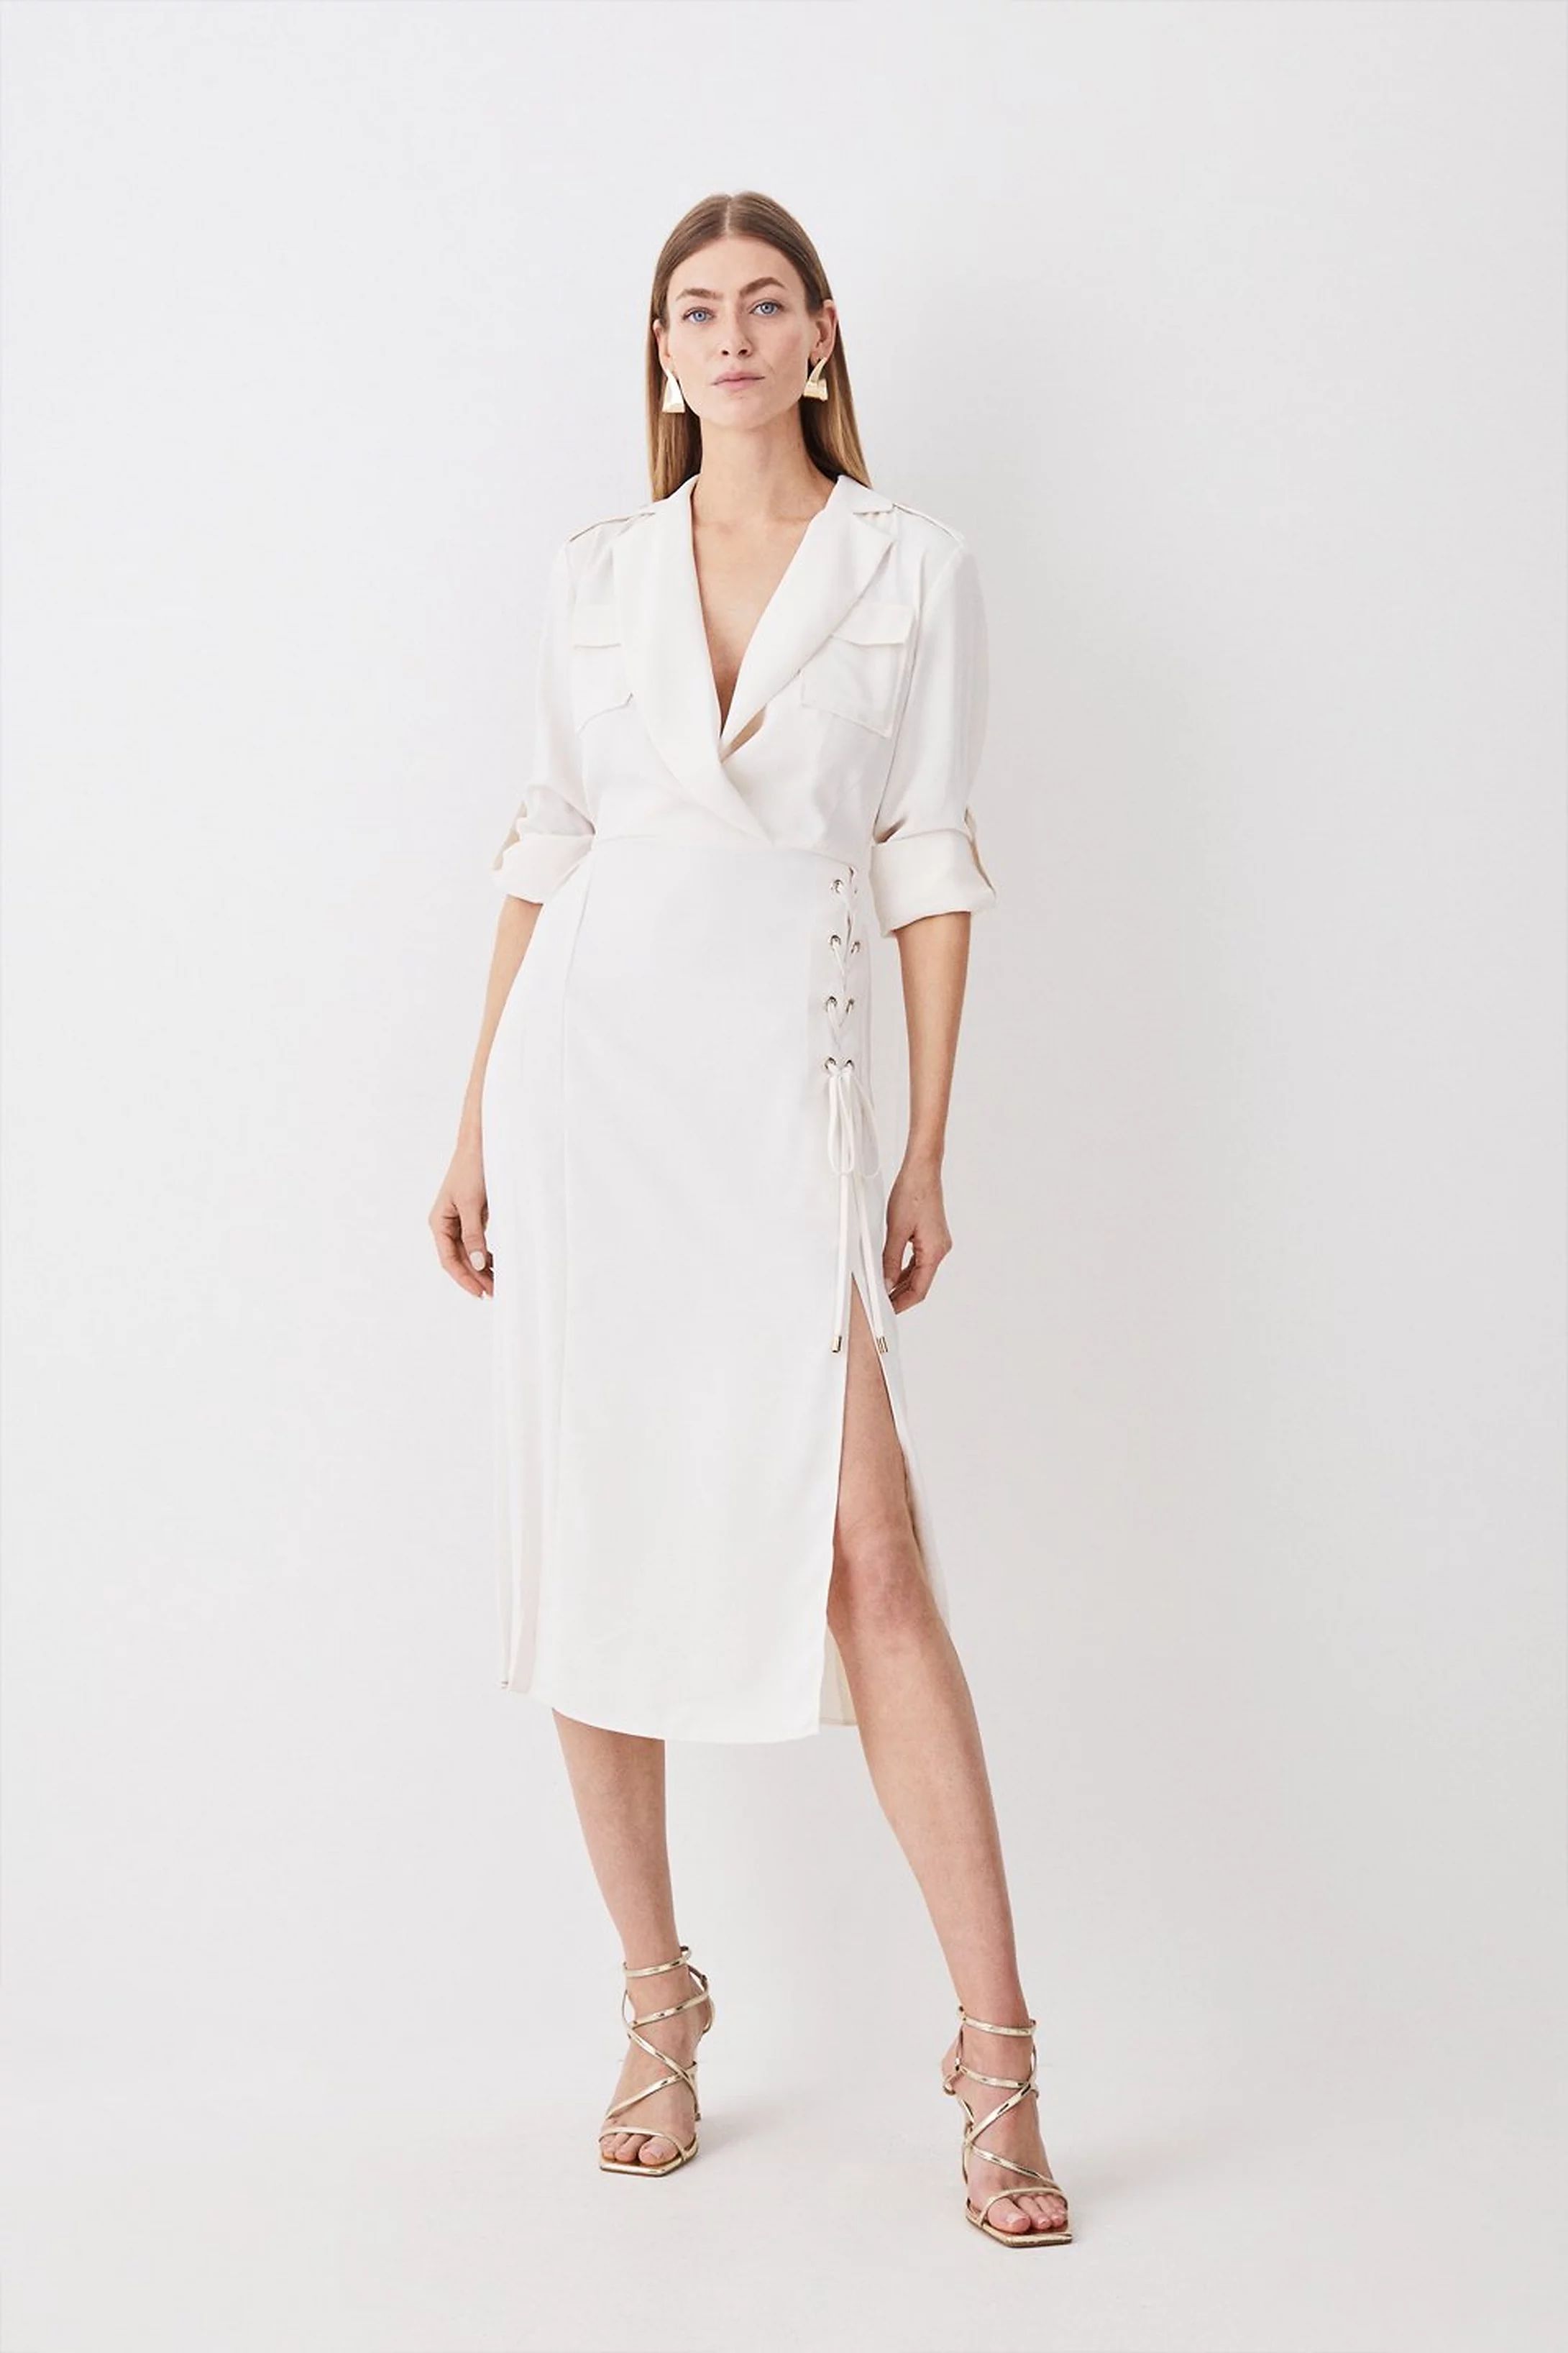 Soft Tailored Lace Up Pleated Shirt Dress | Karen Millen UK + IE + DE + NL